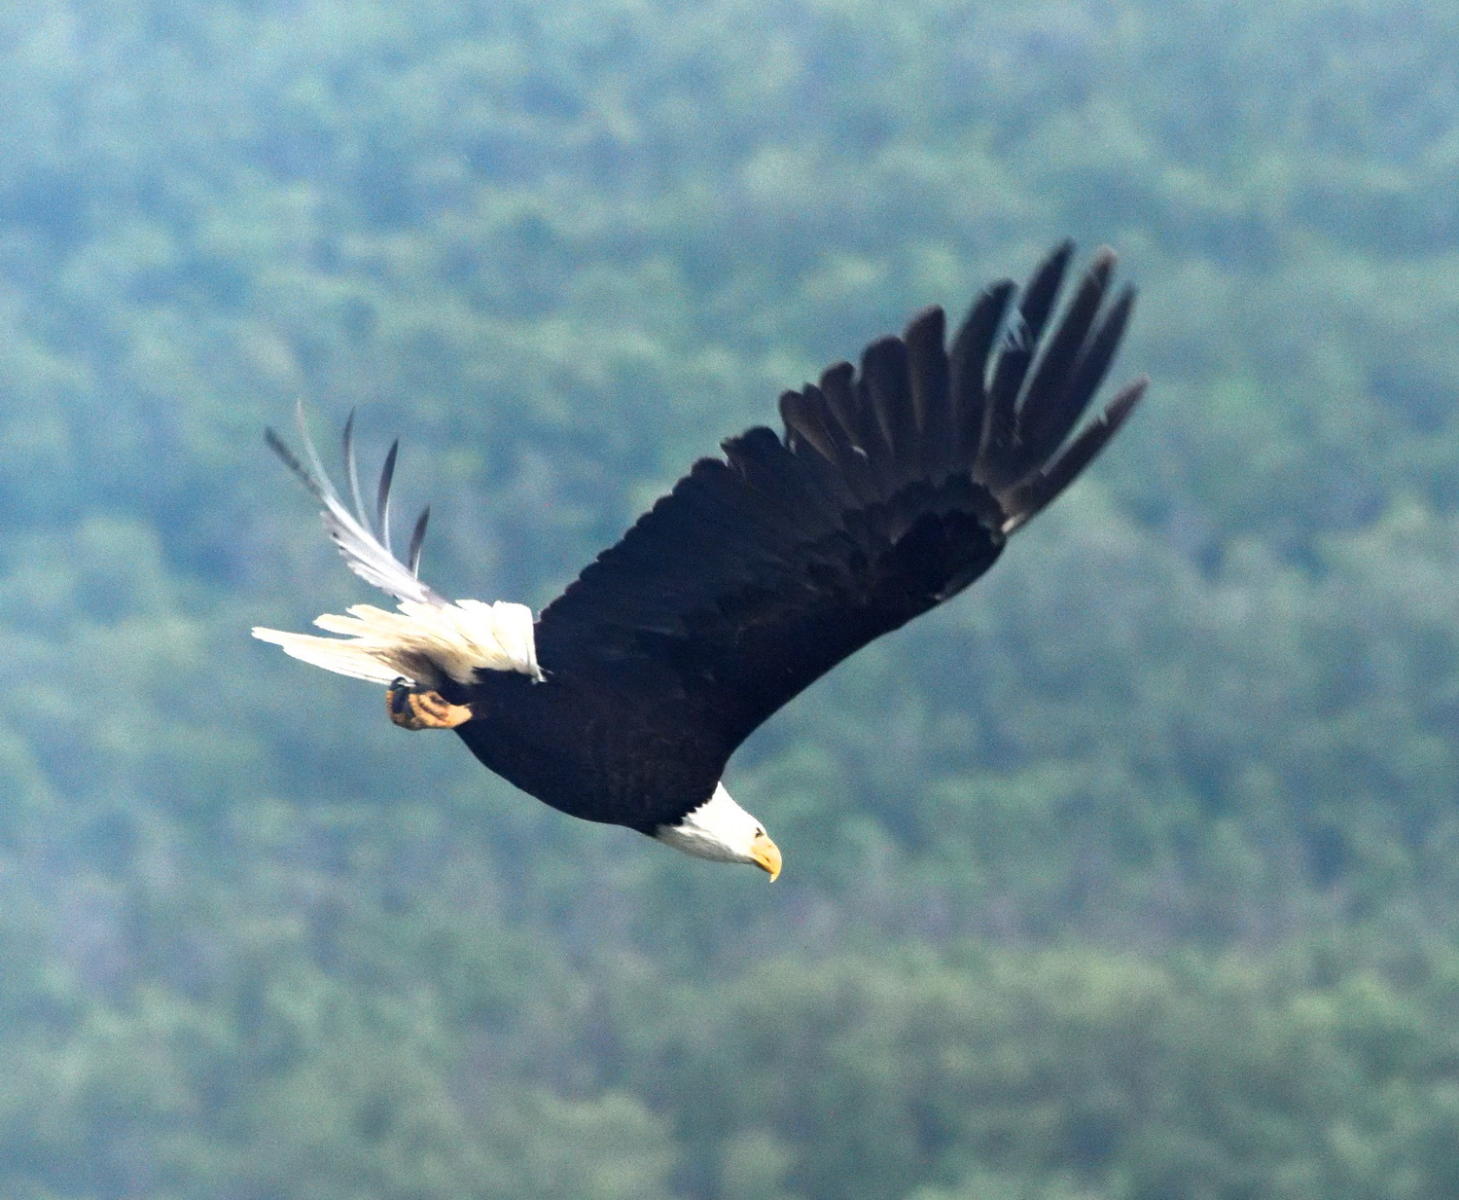 DSC_3504_1A1 - Bald Eagle in Flight